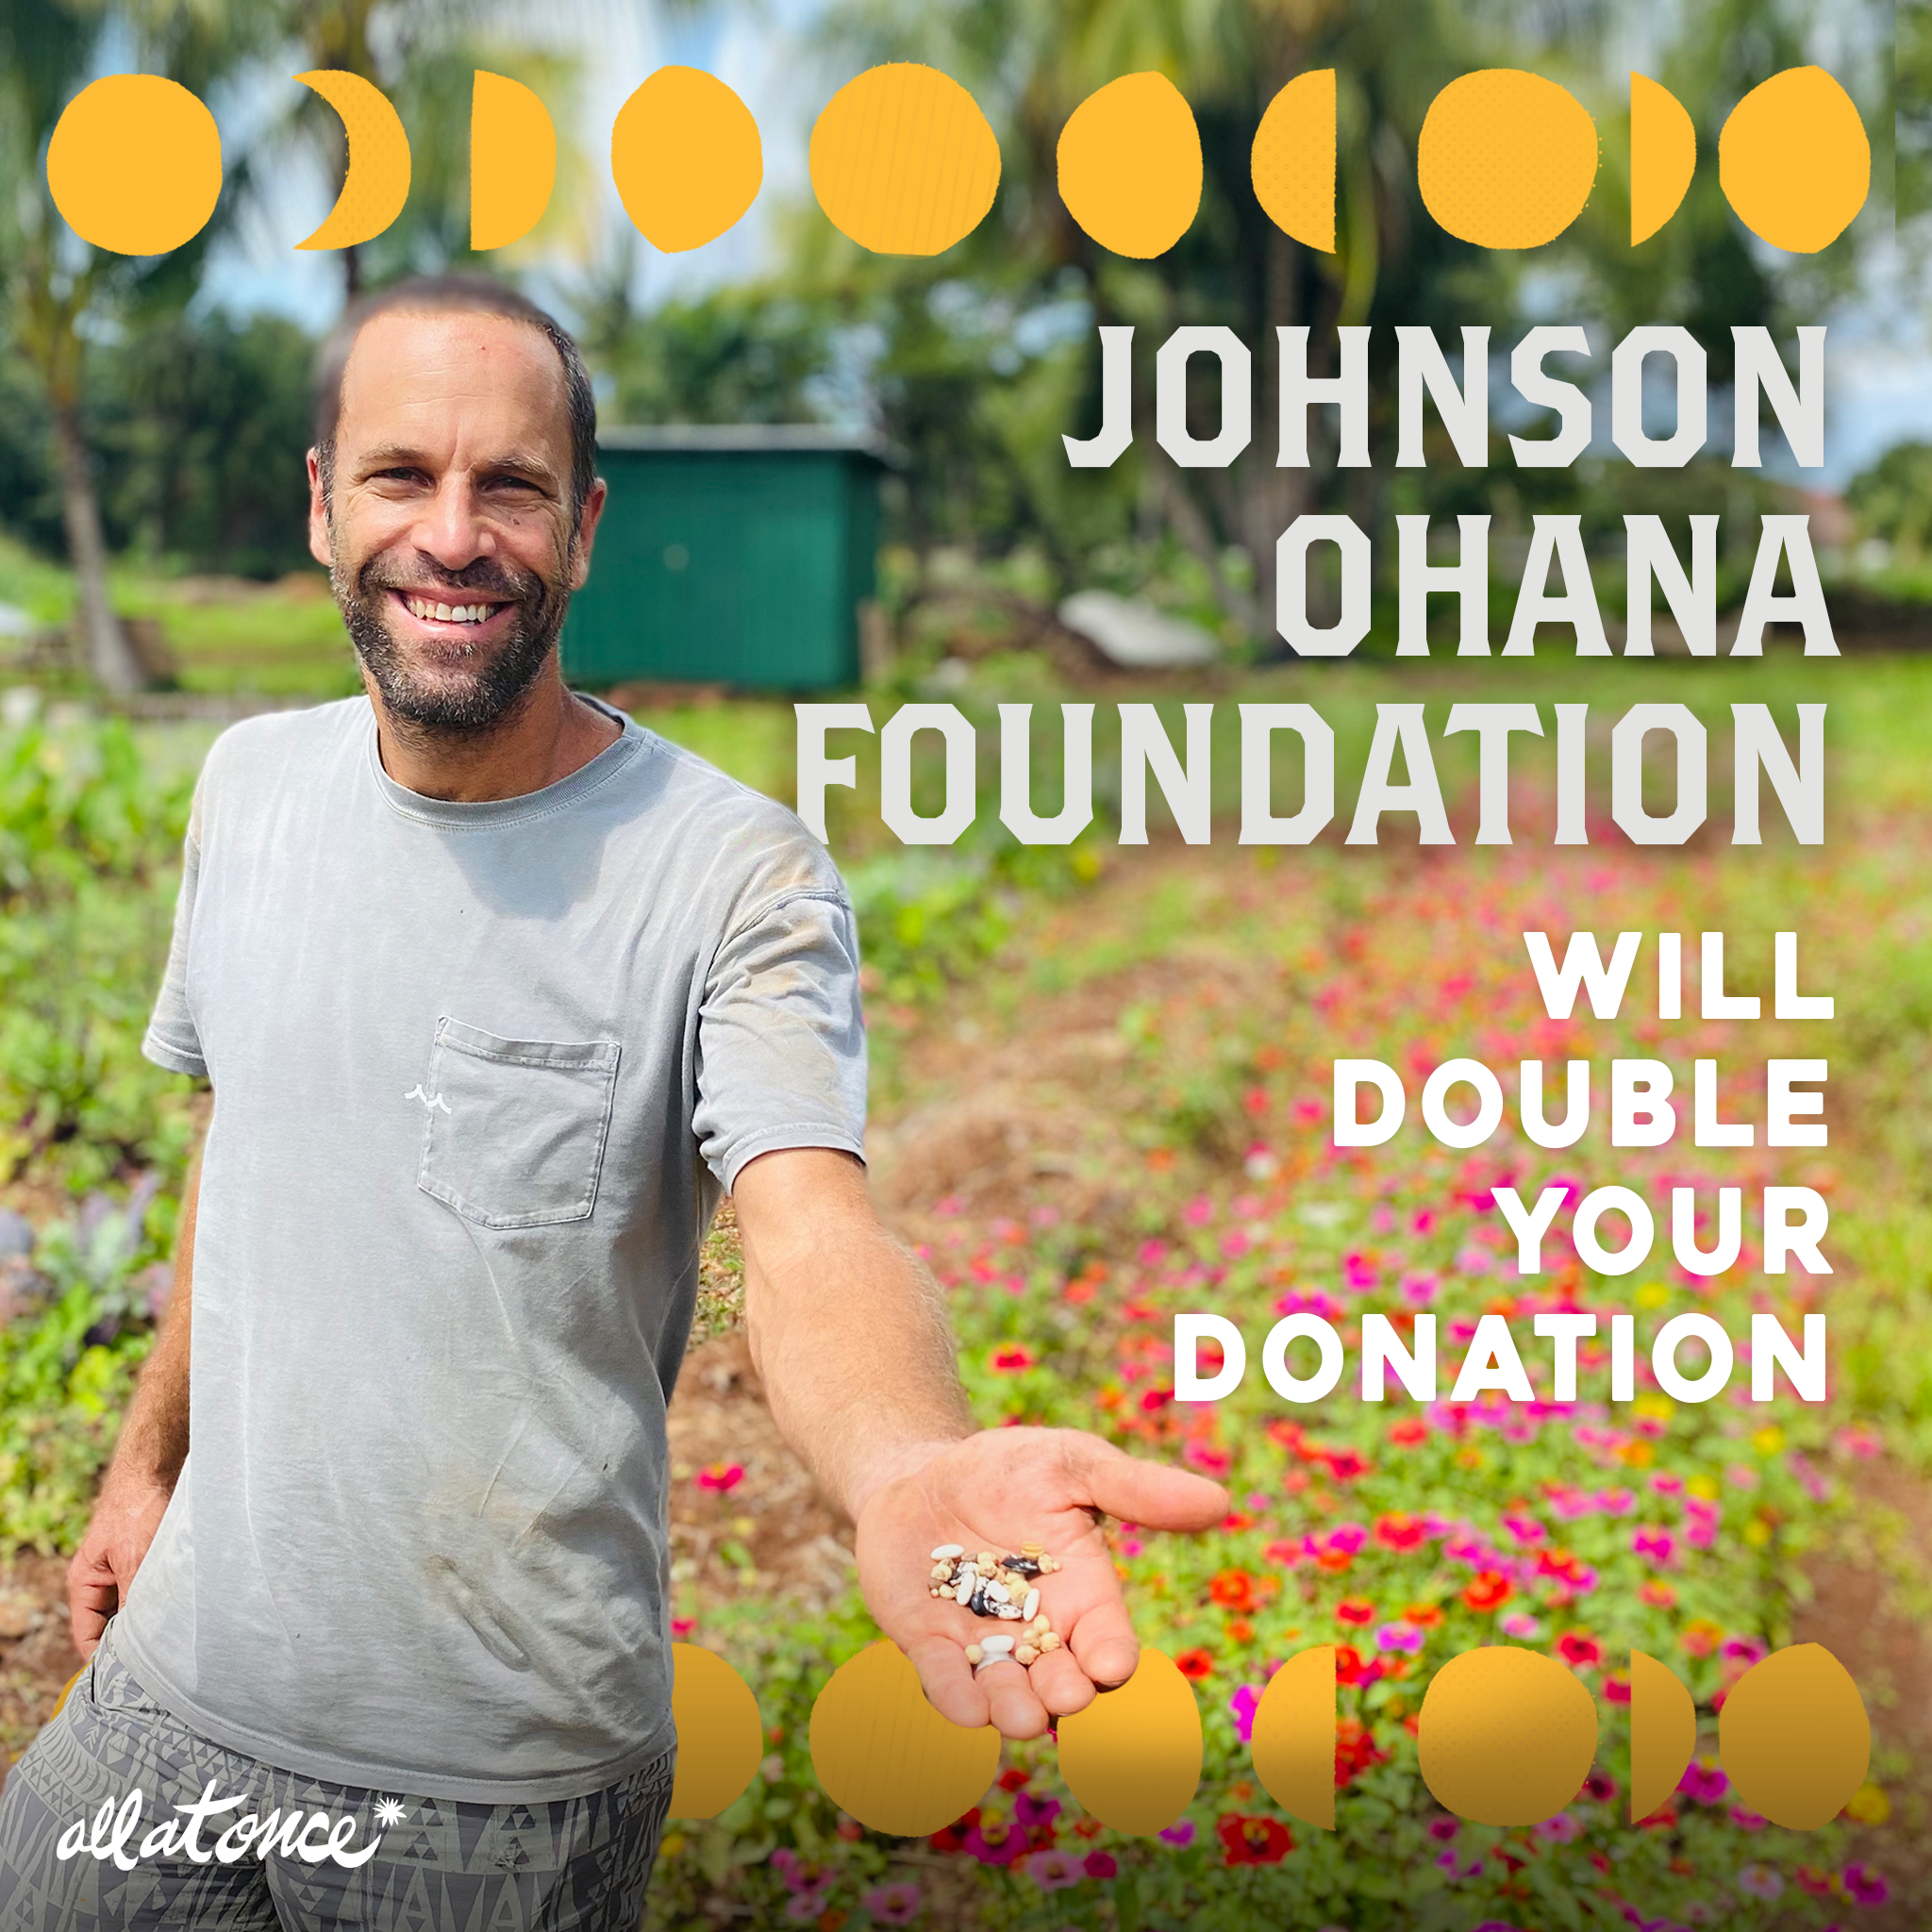 Jack Johnson Ohana foundation will double your donation